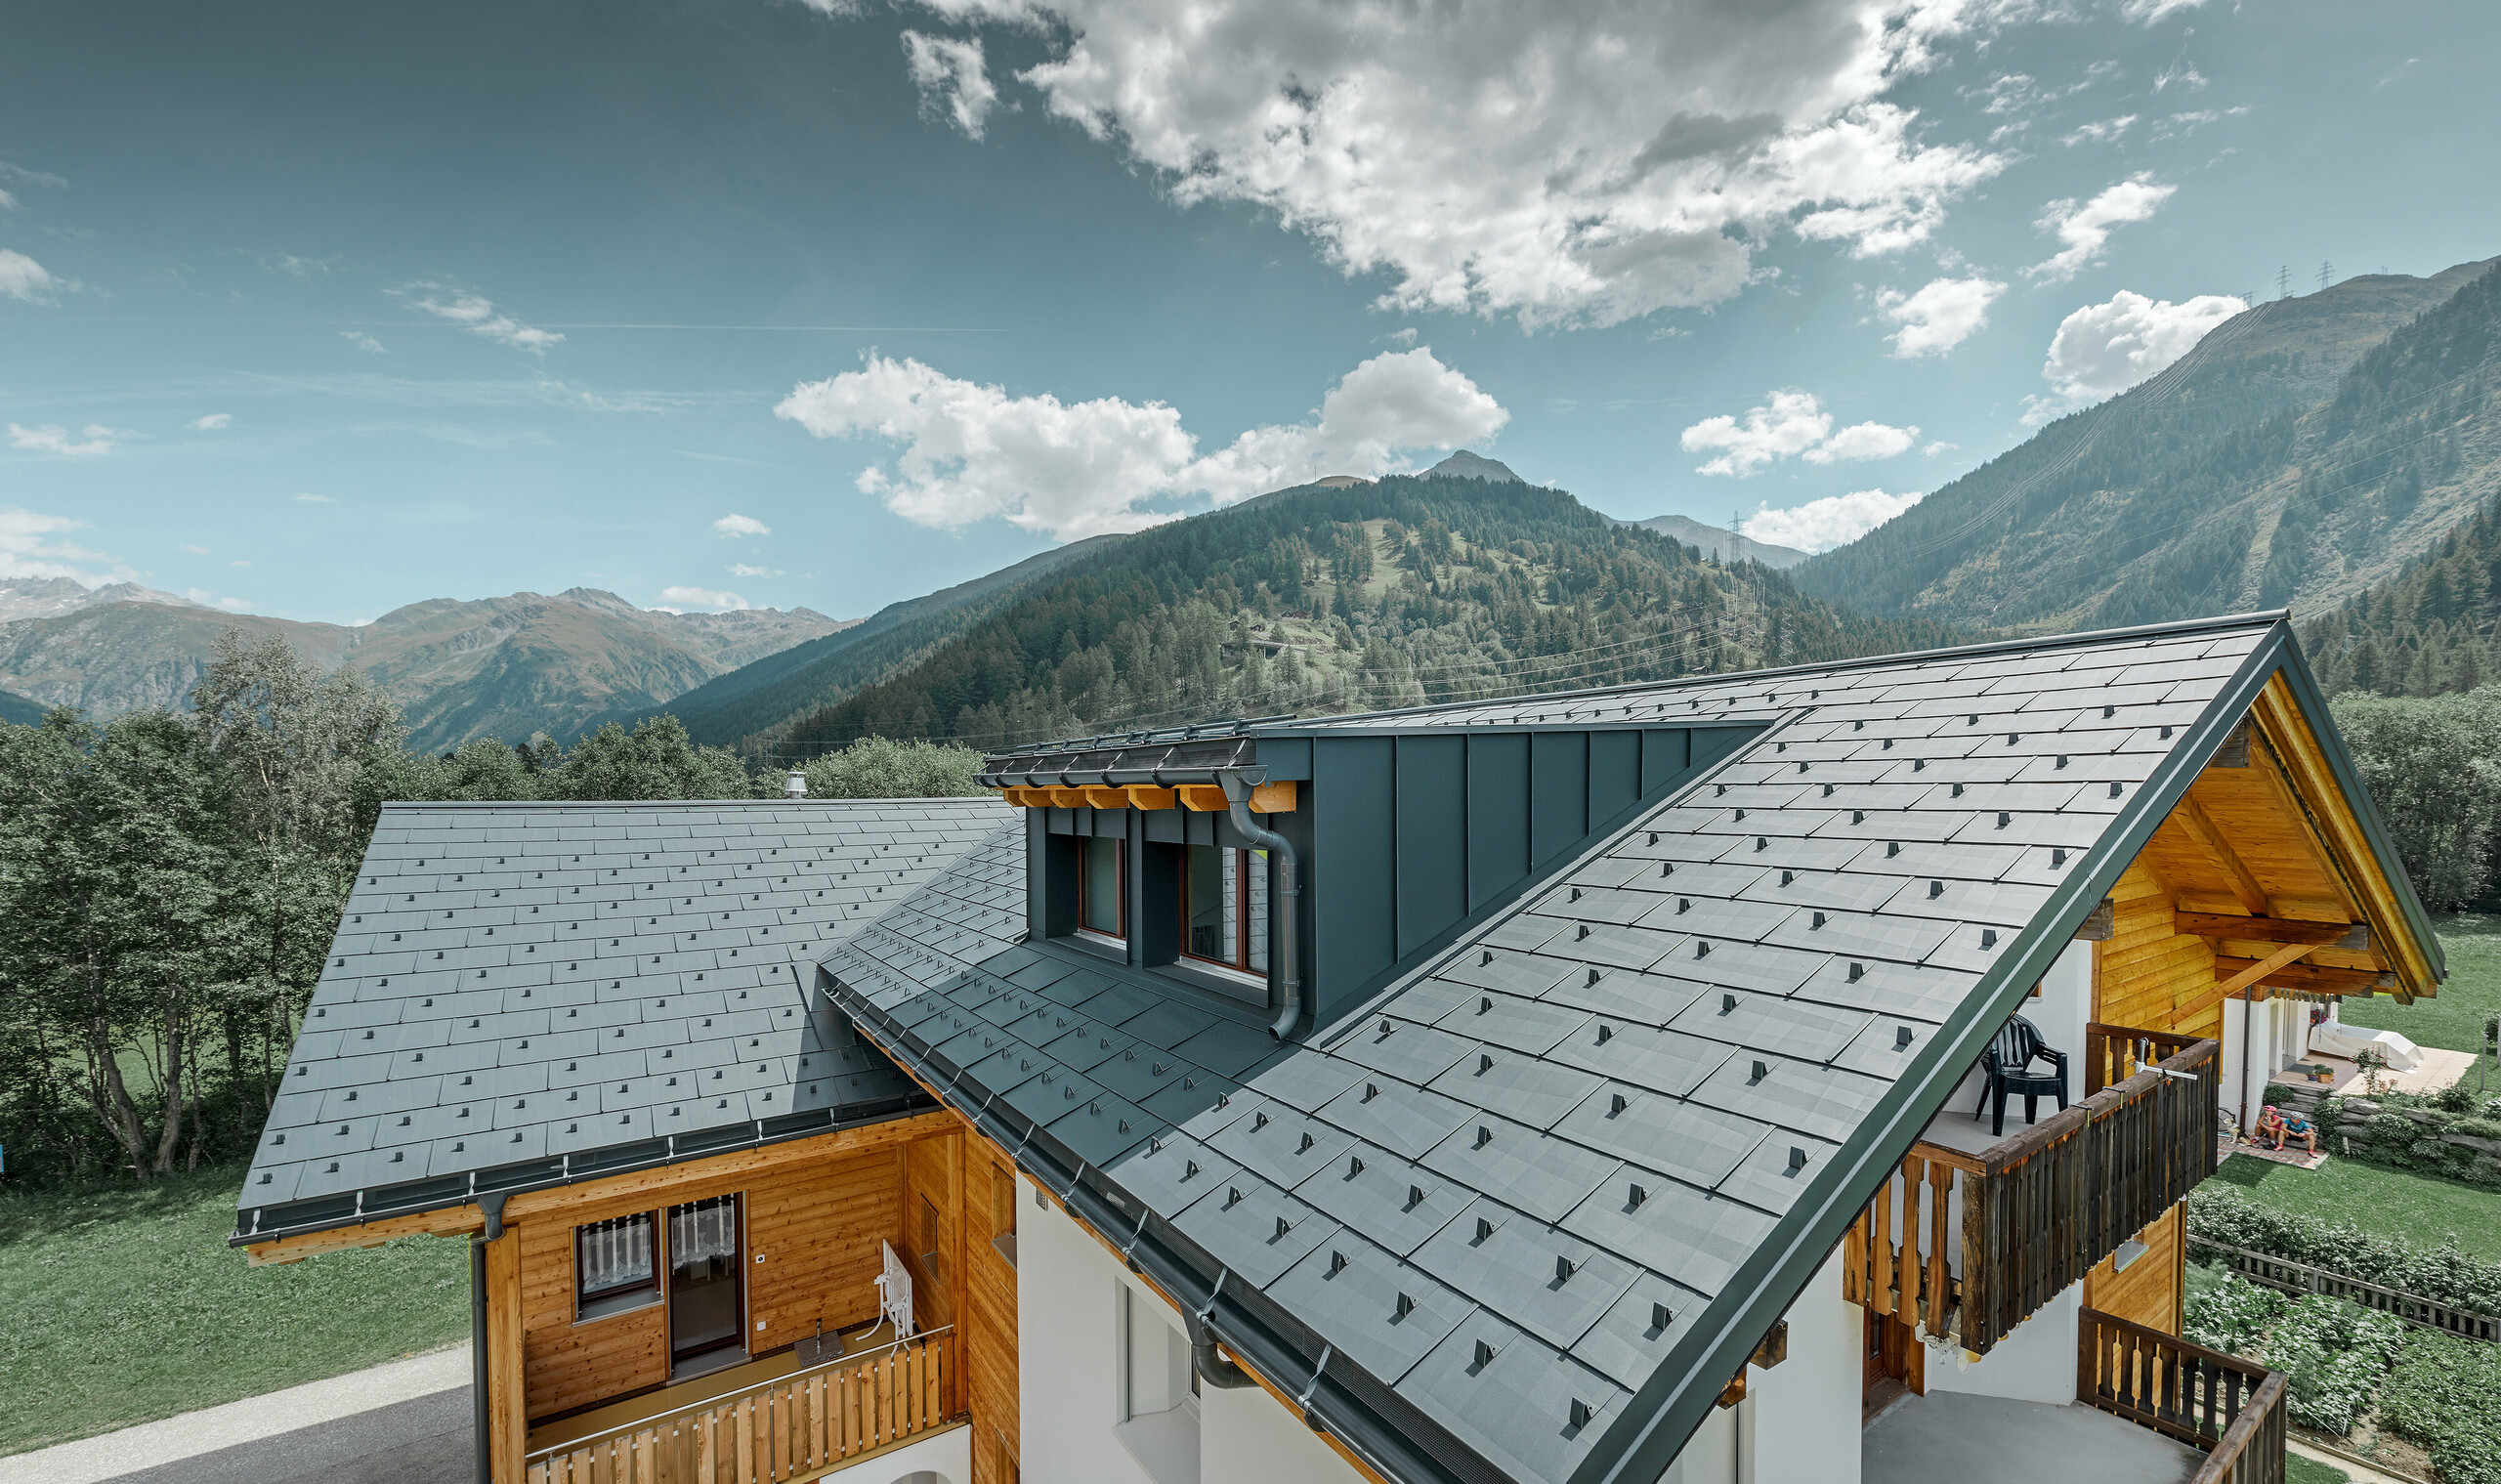 Casa residenziale recentemente ristrutturata con tetto a due falde e abbaino; la ristrutturazione del tetto è stata realizzata con il pannello per il tetto FX.12 PREFA in antracite.